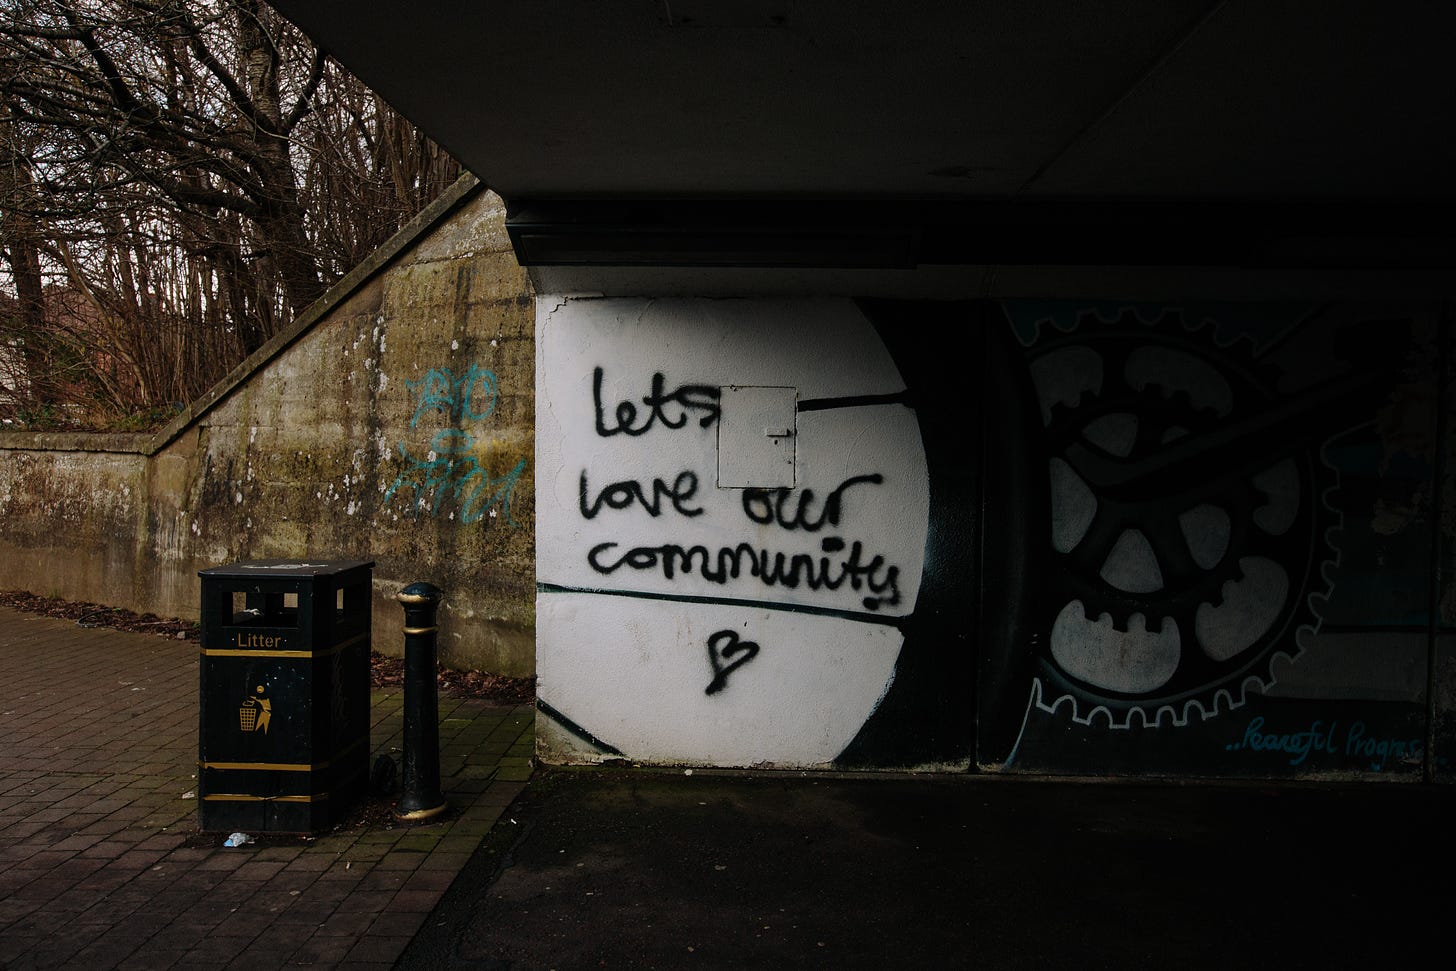 Imagem: Uma pichação escrita "Lets love our comunity" <3